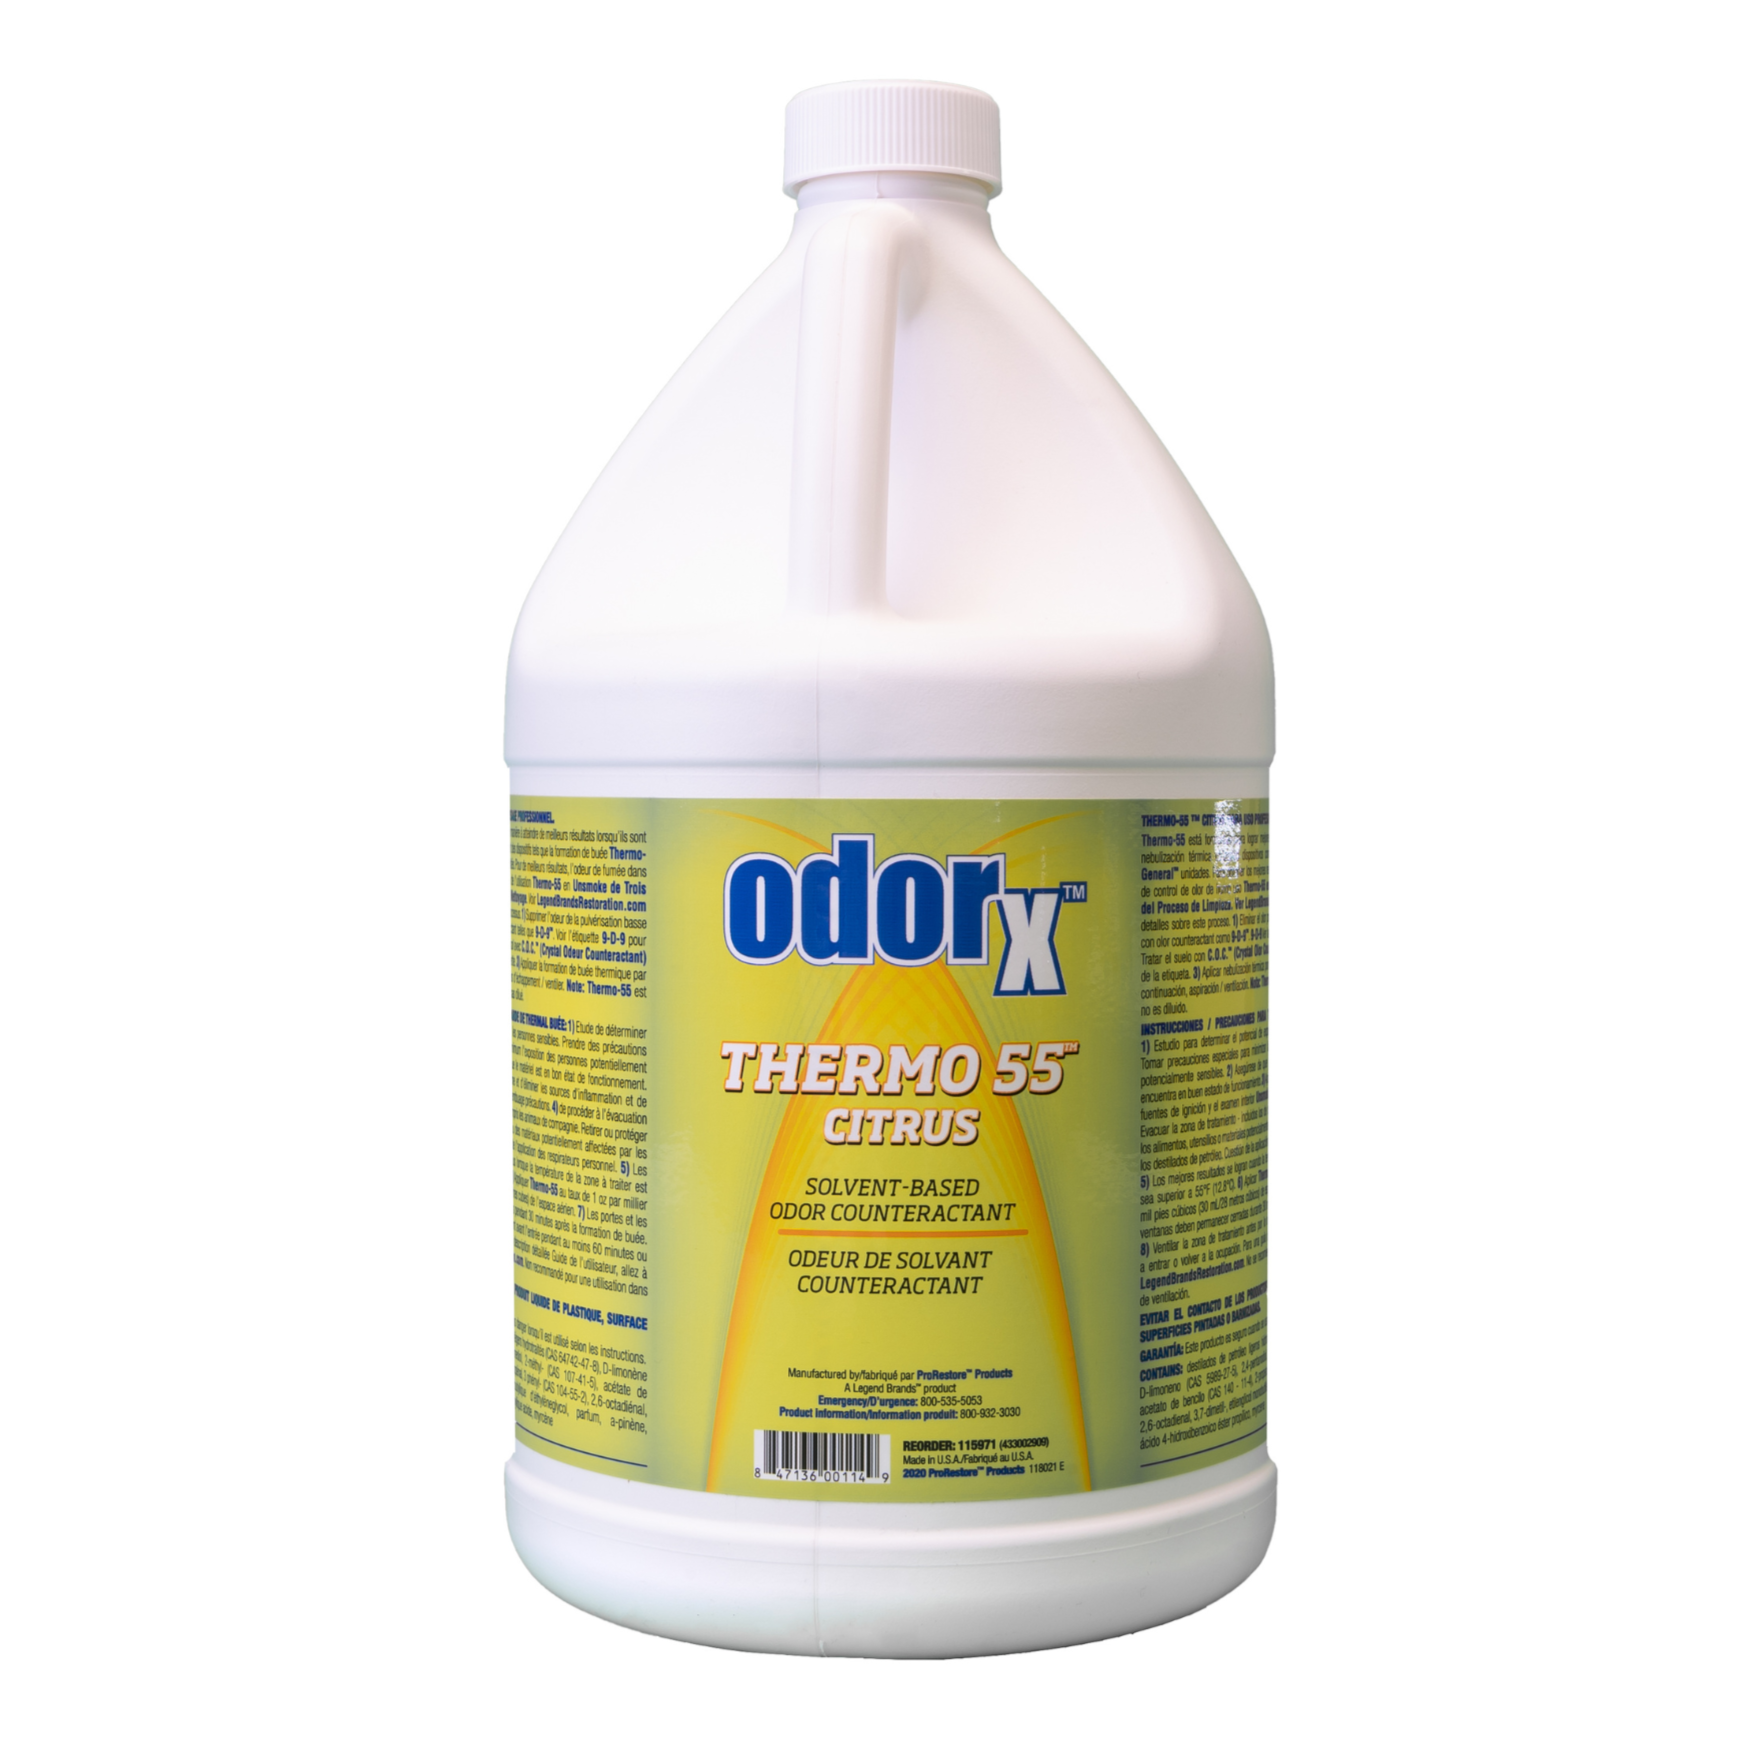 odeur solvant counteractant thermo55 agrume odorx